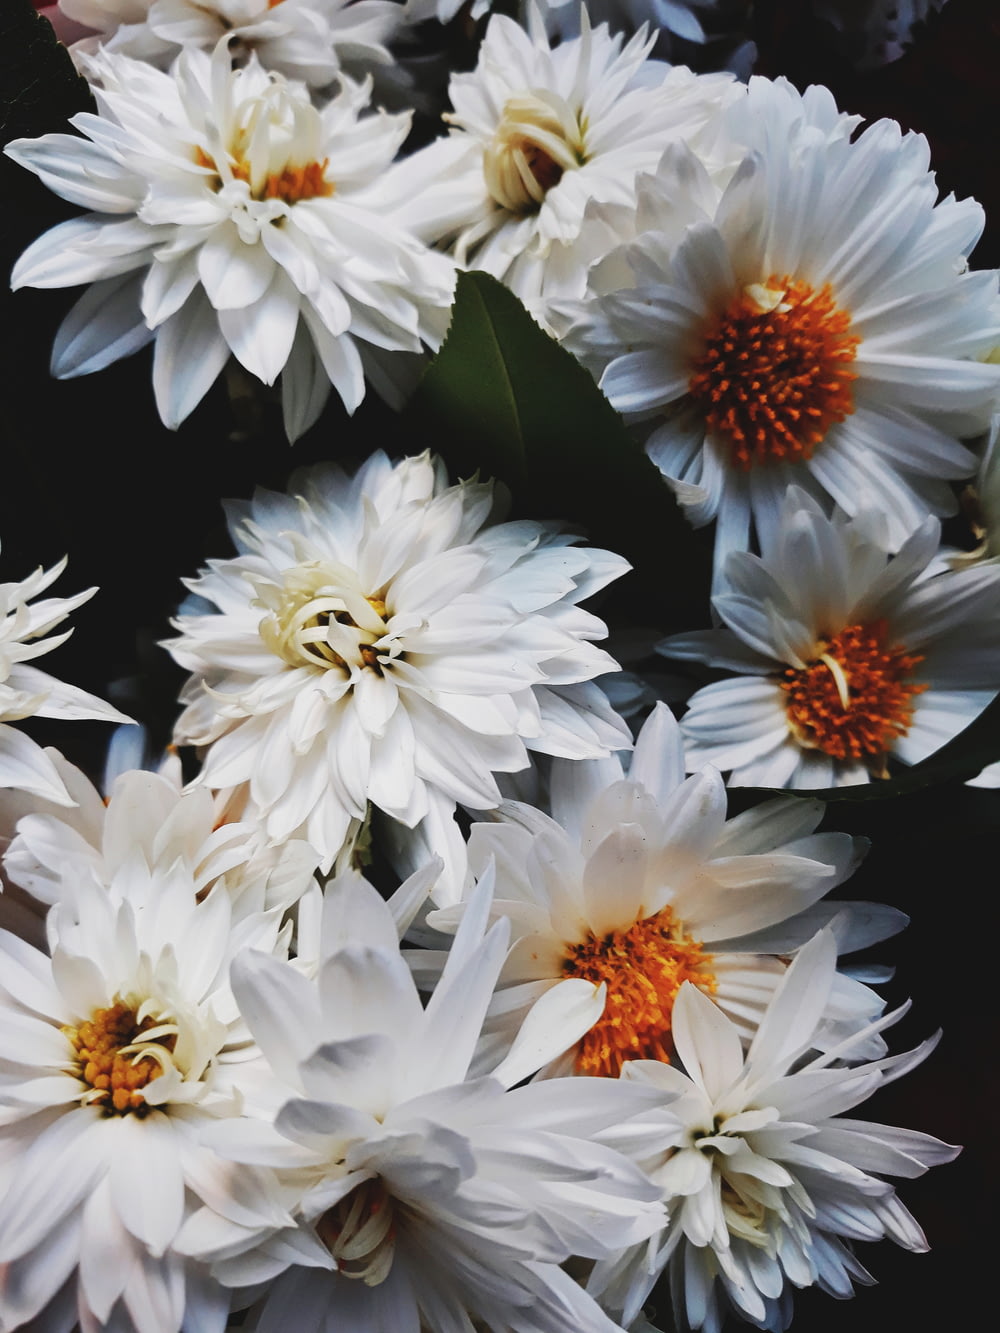 Photographie sélective de fleurs de chrysanthème blanc en fleurs